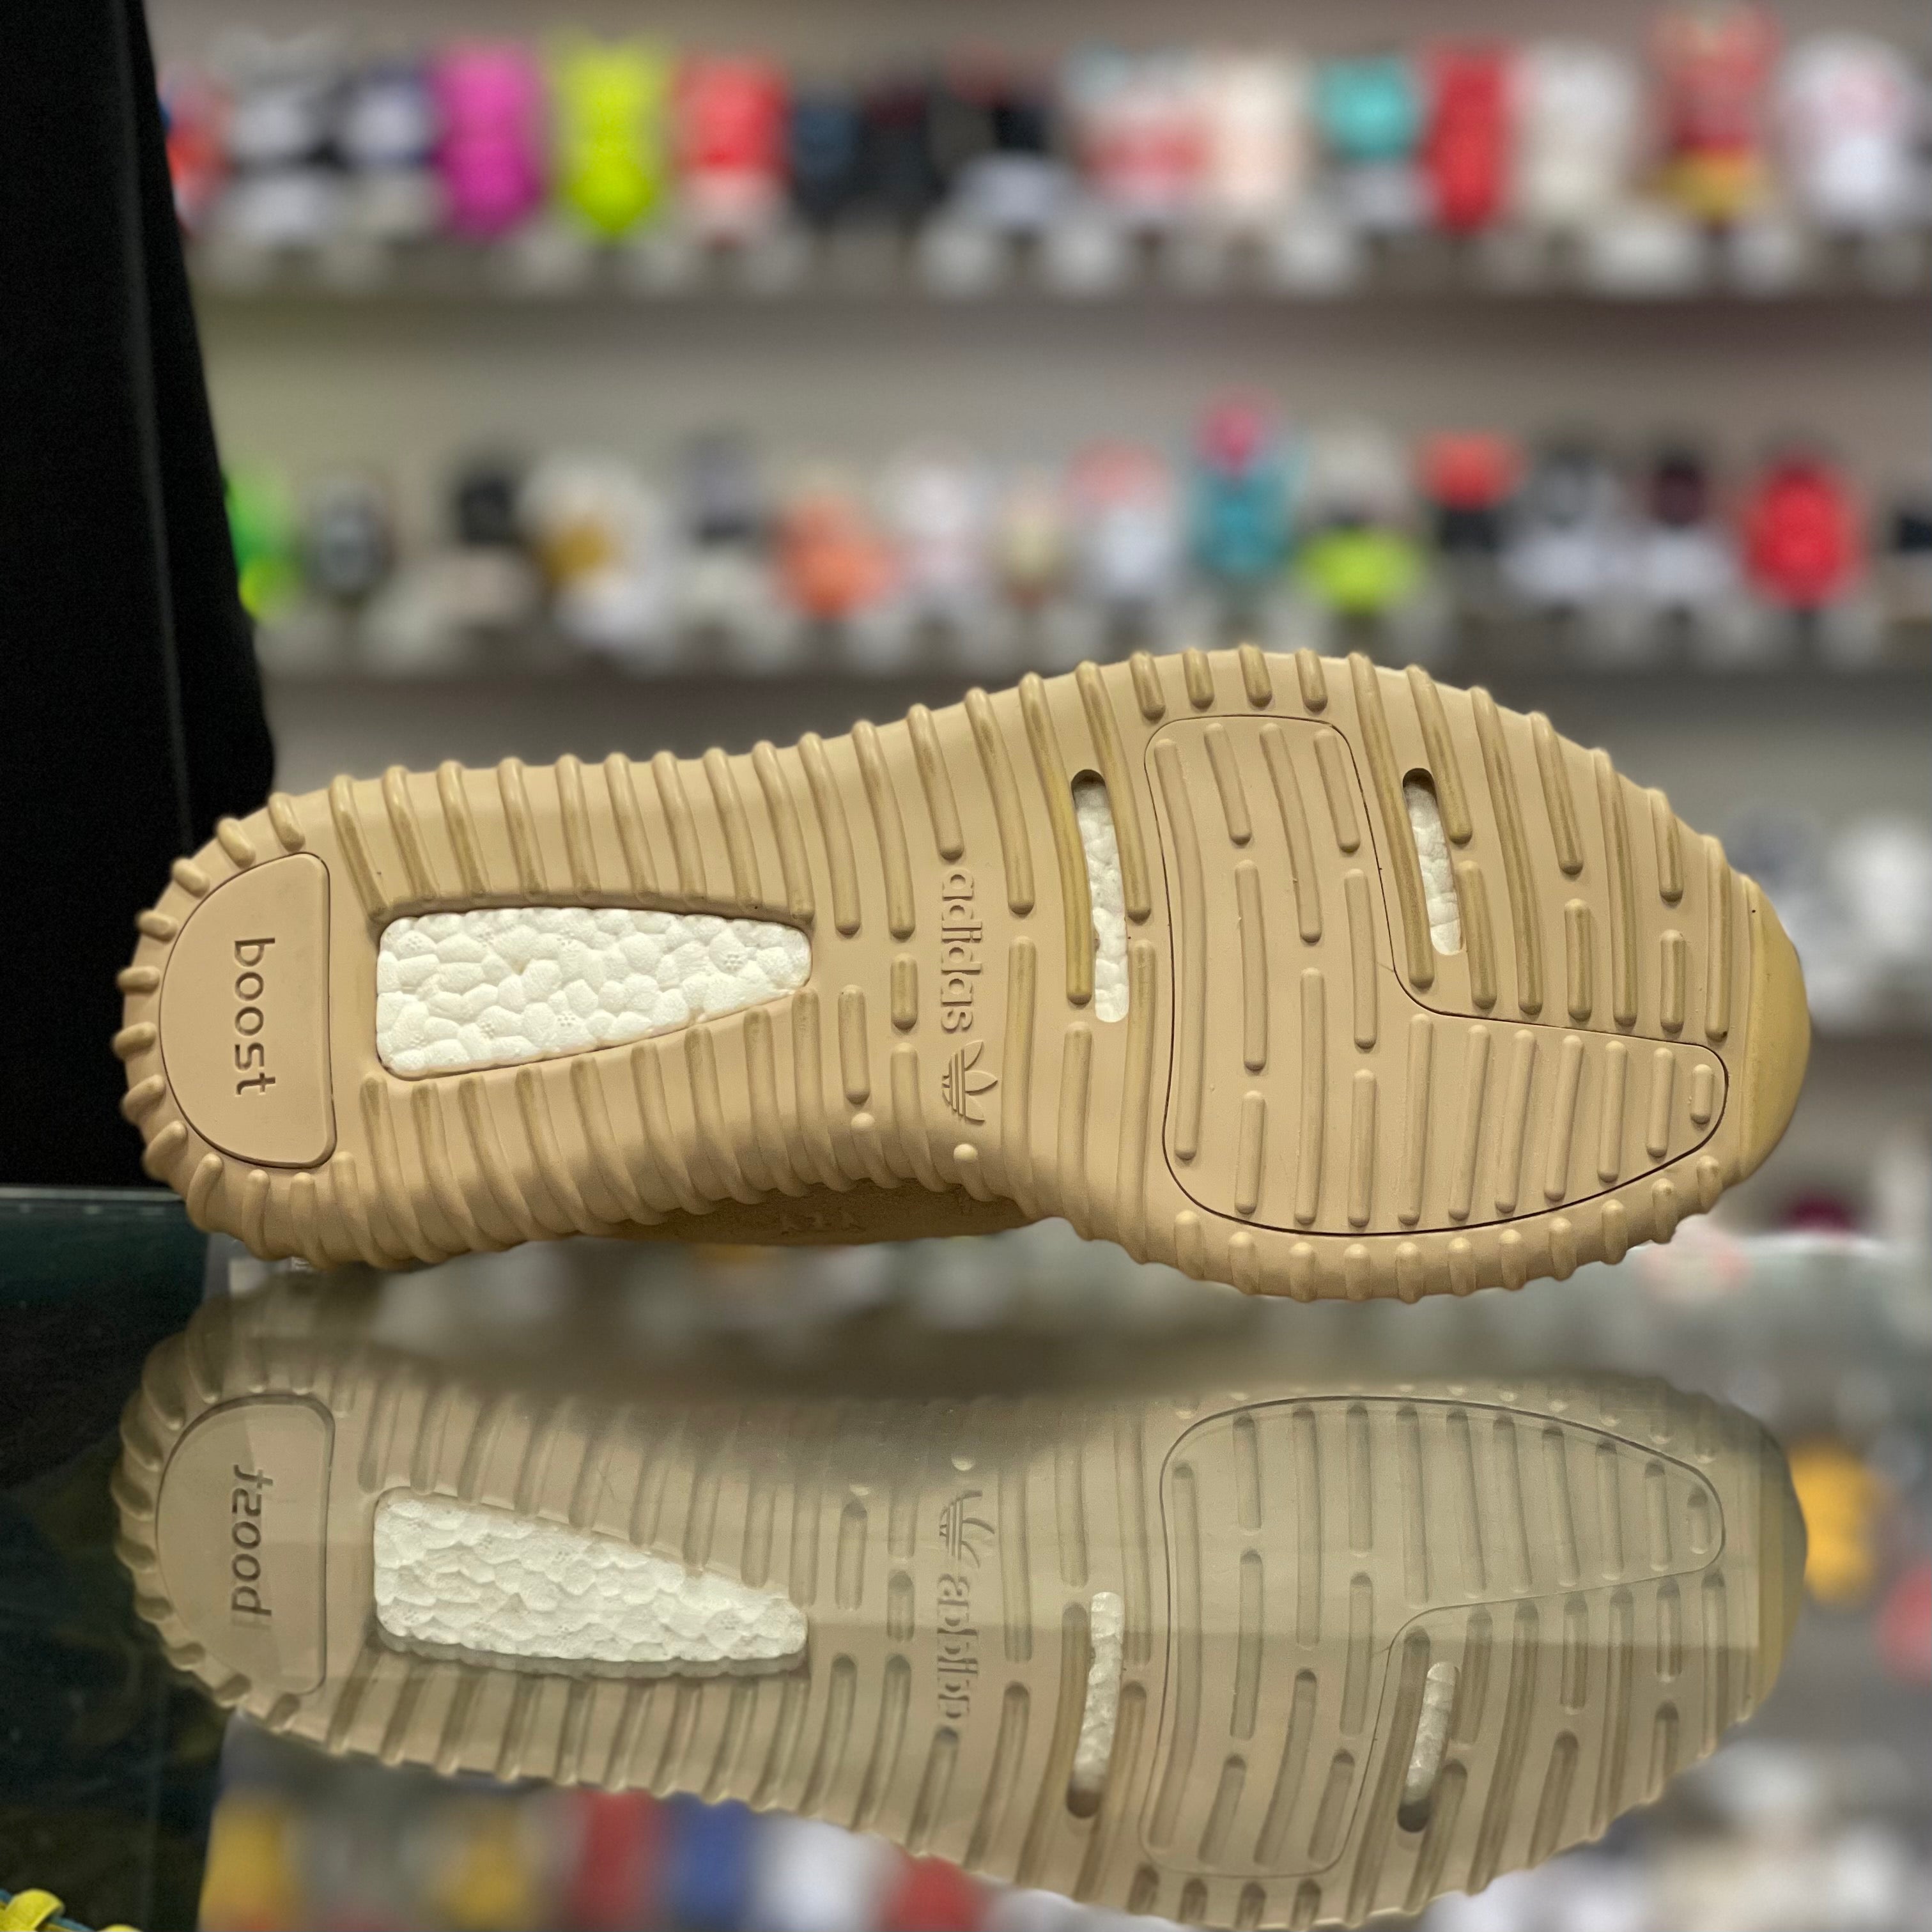 Adidas Yeezy Boost 350 V1 “Oxford Tan”